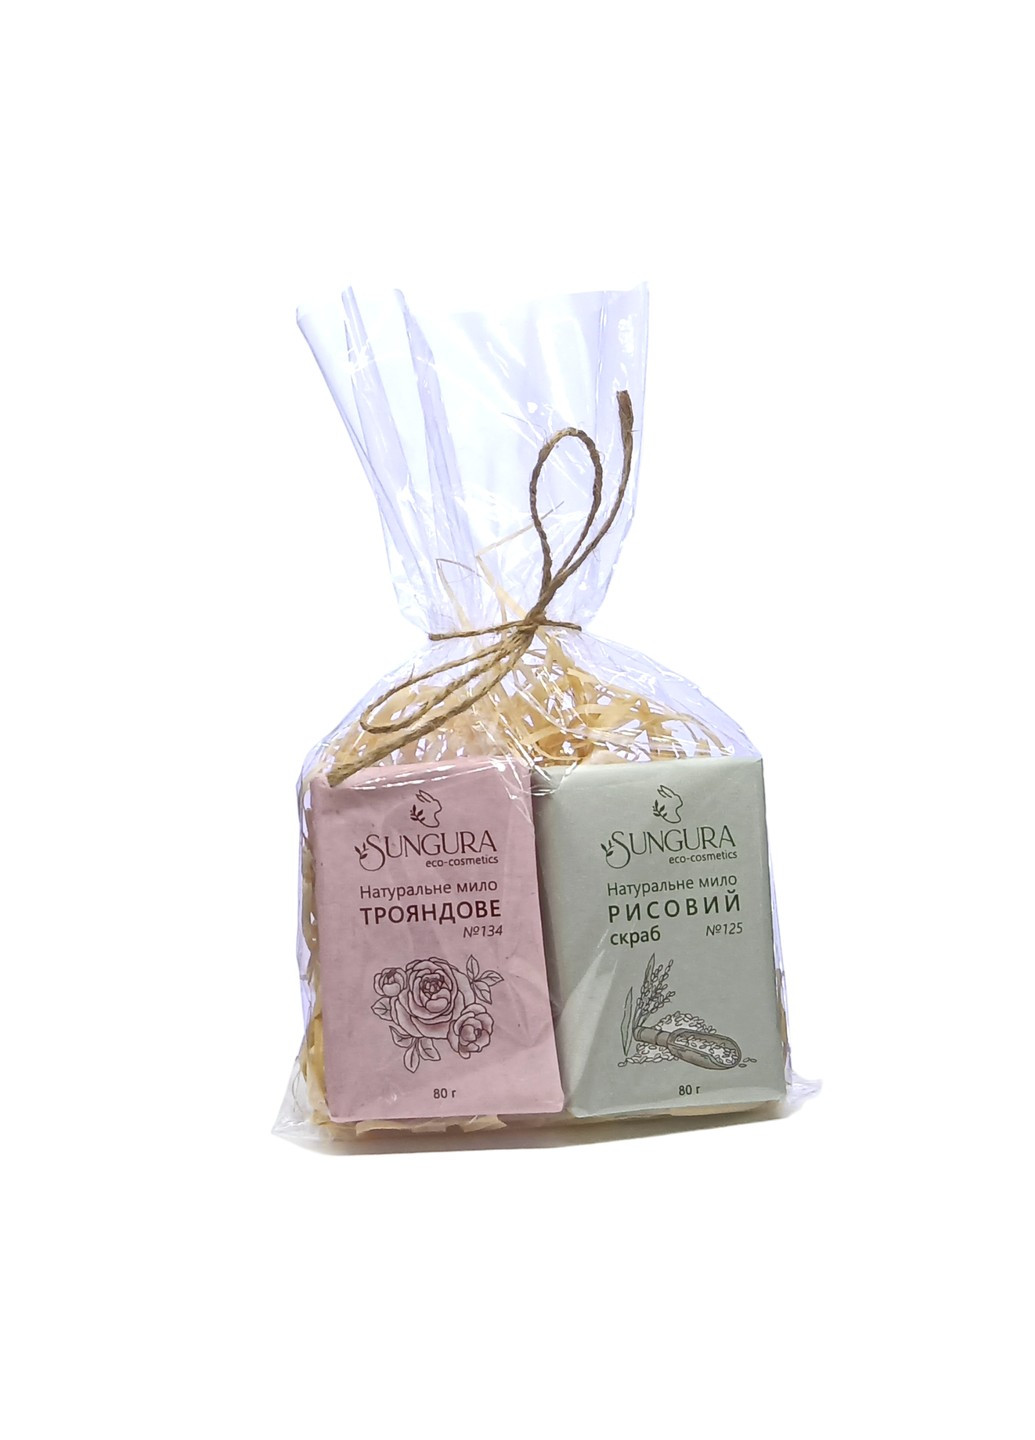 Подарочный набор натурального мыла 037 (рисовый скраб и роза) Sungura (273414705)